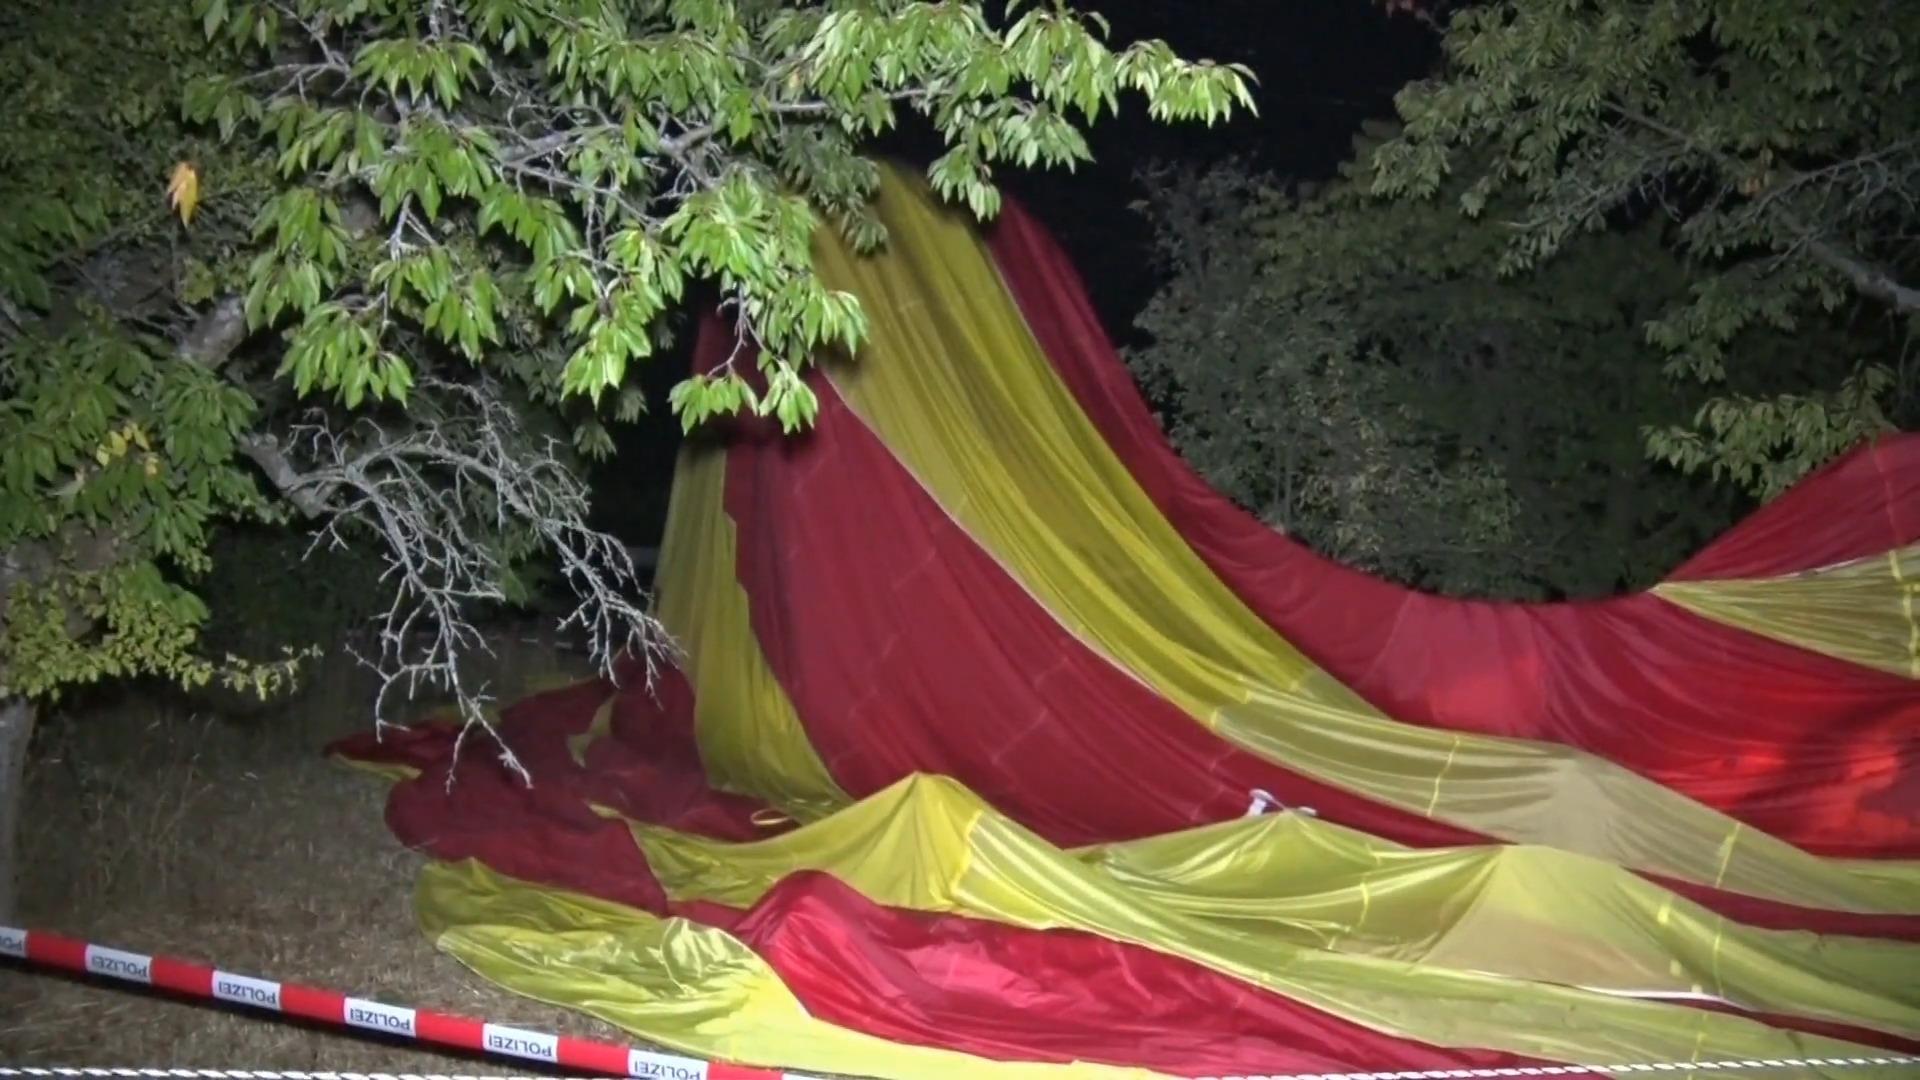 Heißluftballon schleudert Auto durch die Luft – Mann stirbt Tragödie bei Ballonstart